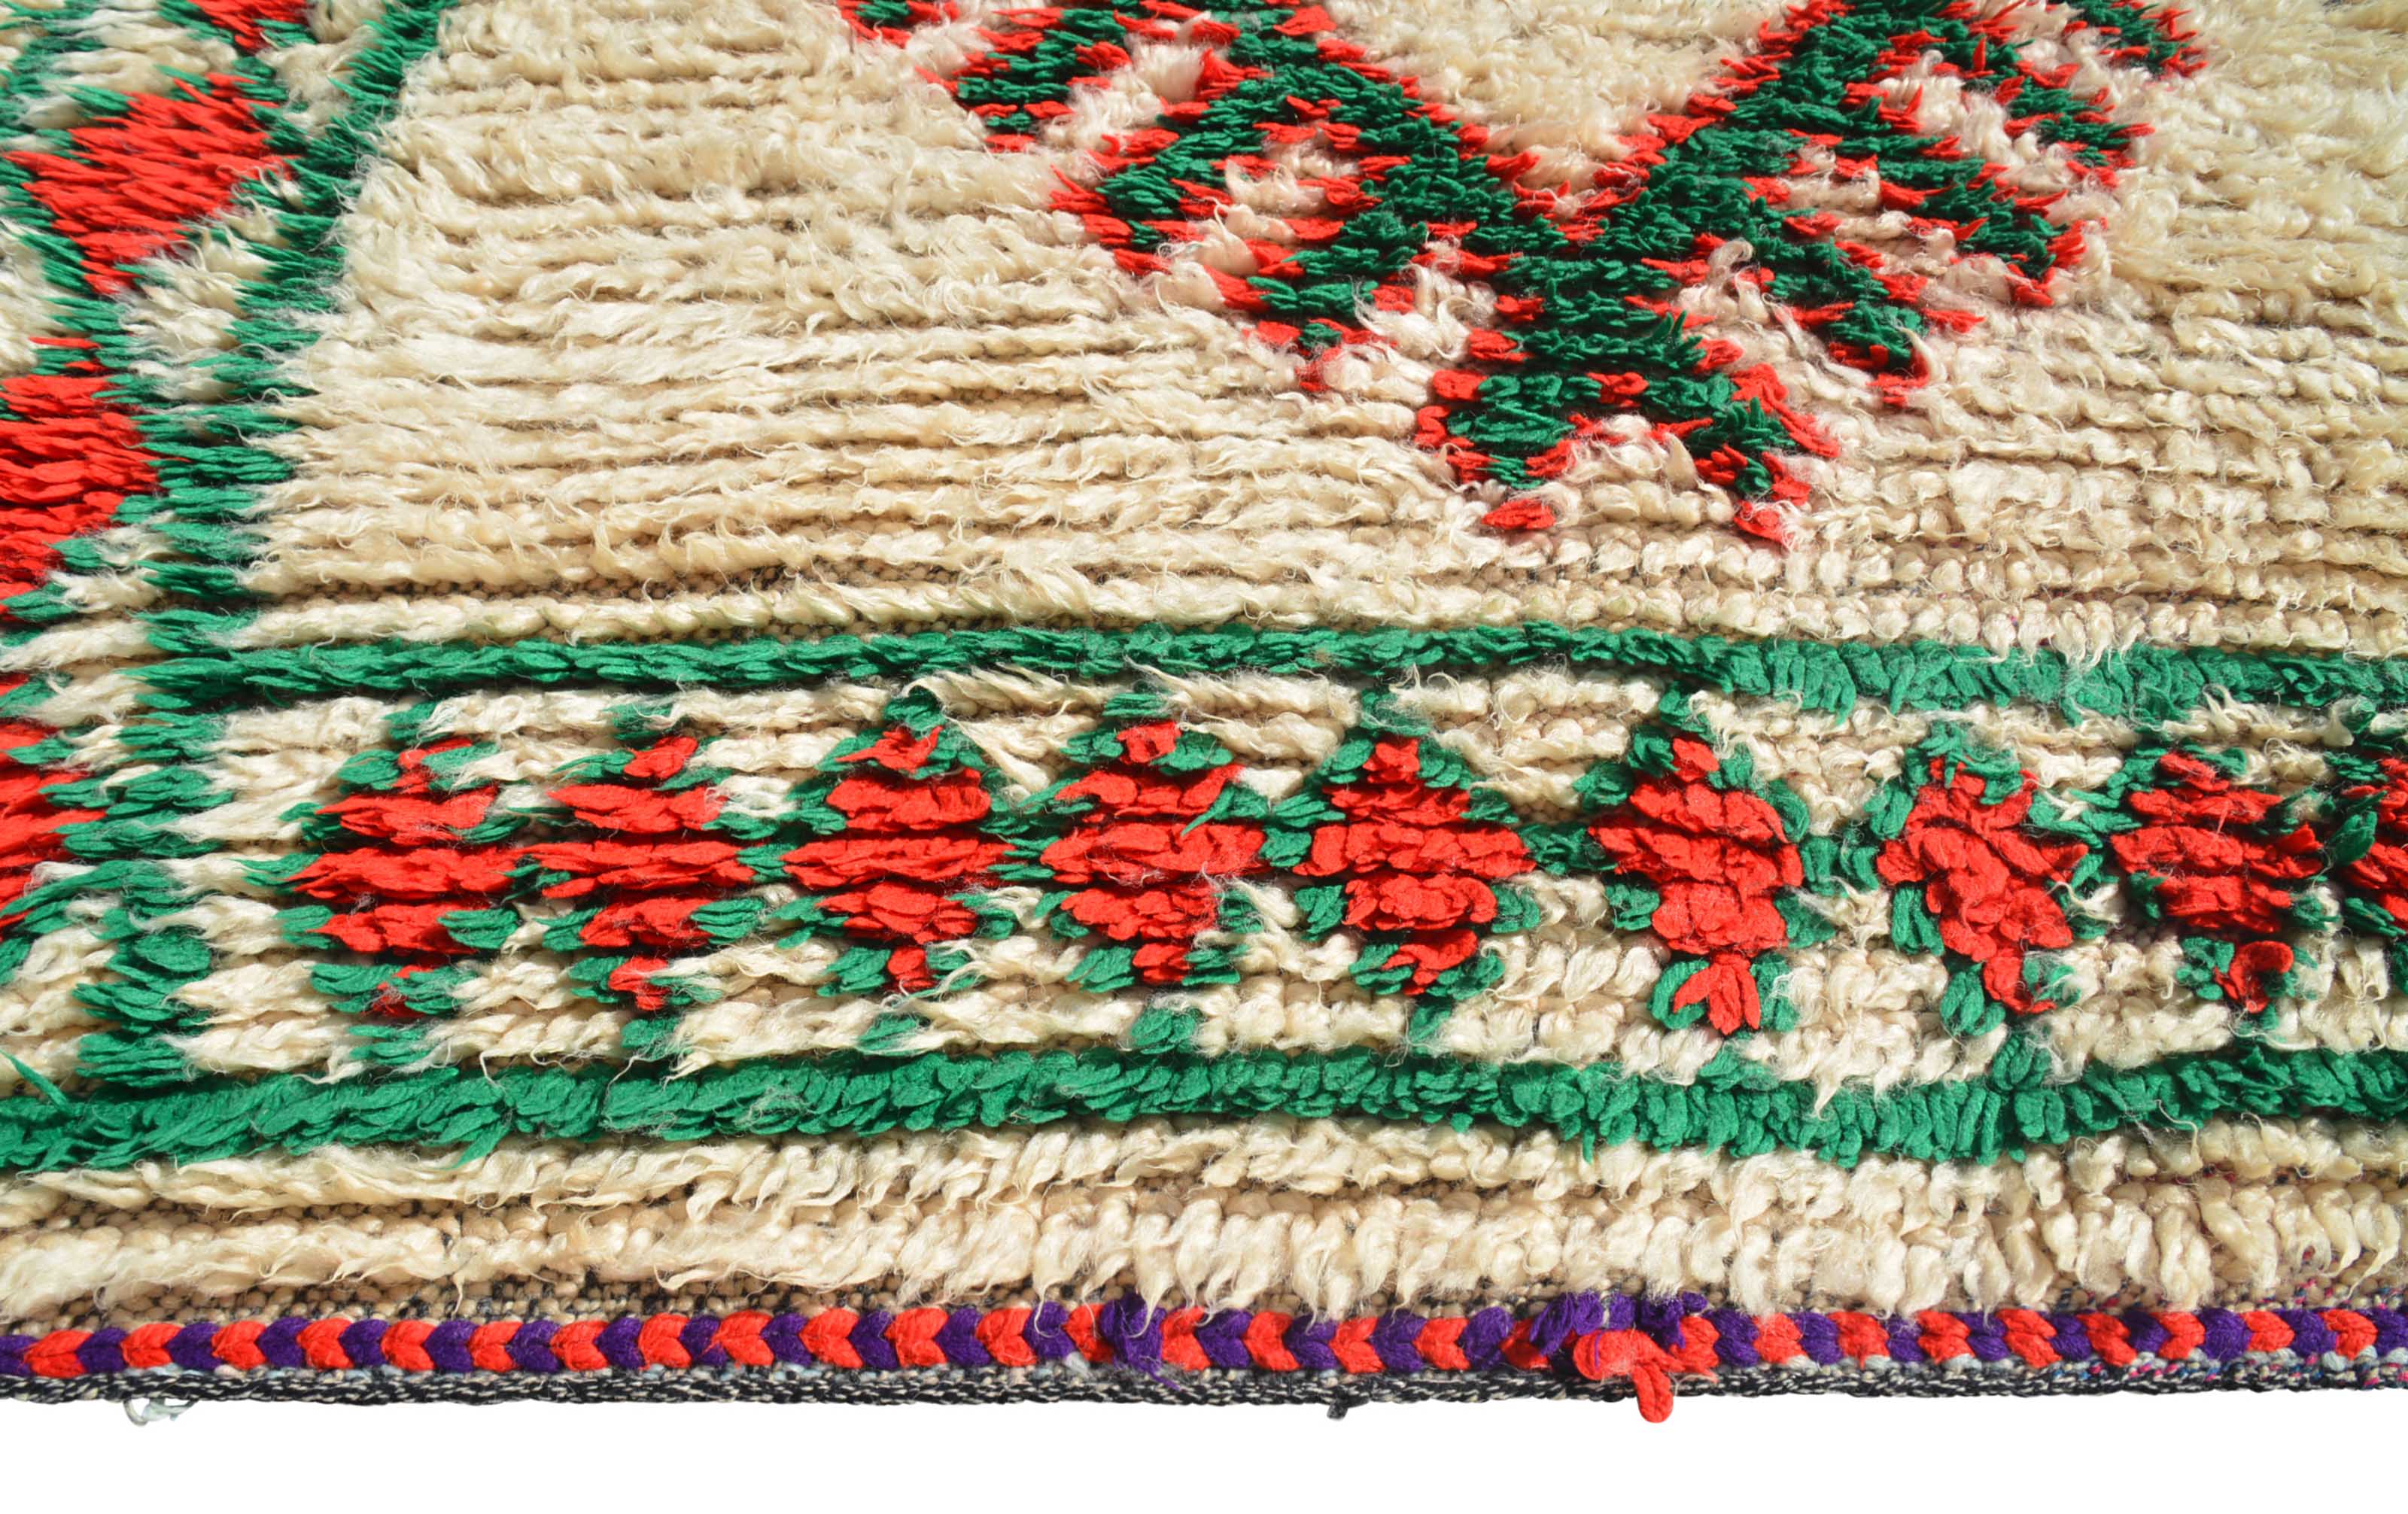 Vintage Moroccan Rug Vintage Moroccan Rug - Hand Knotted Rugs - Illuminate Collective illuminate collective 